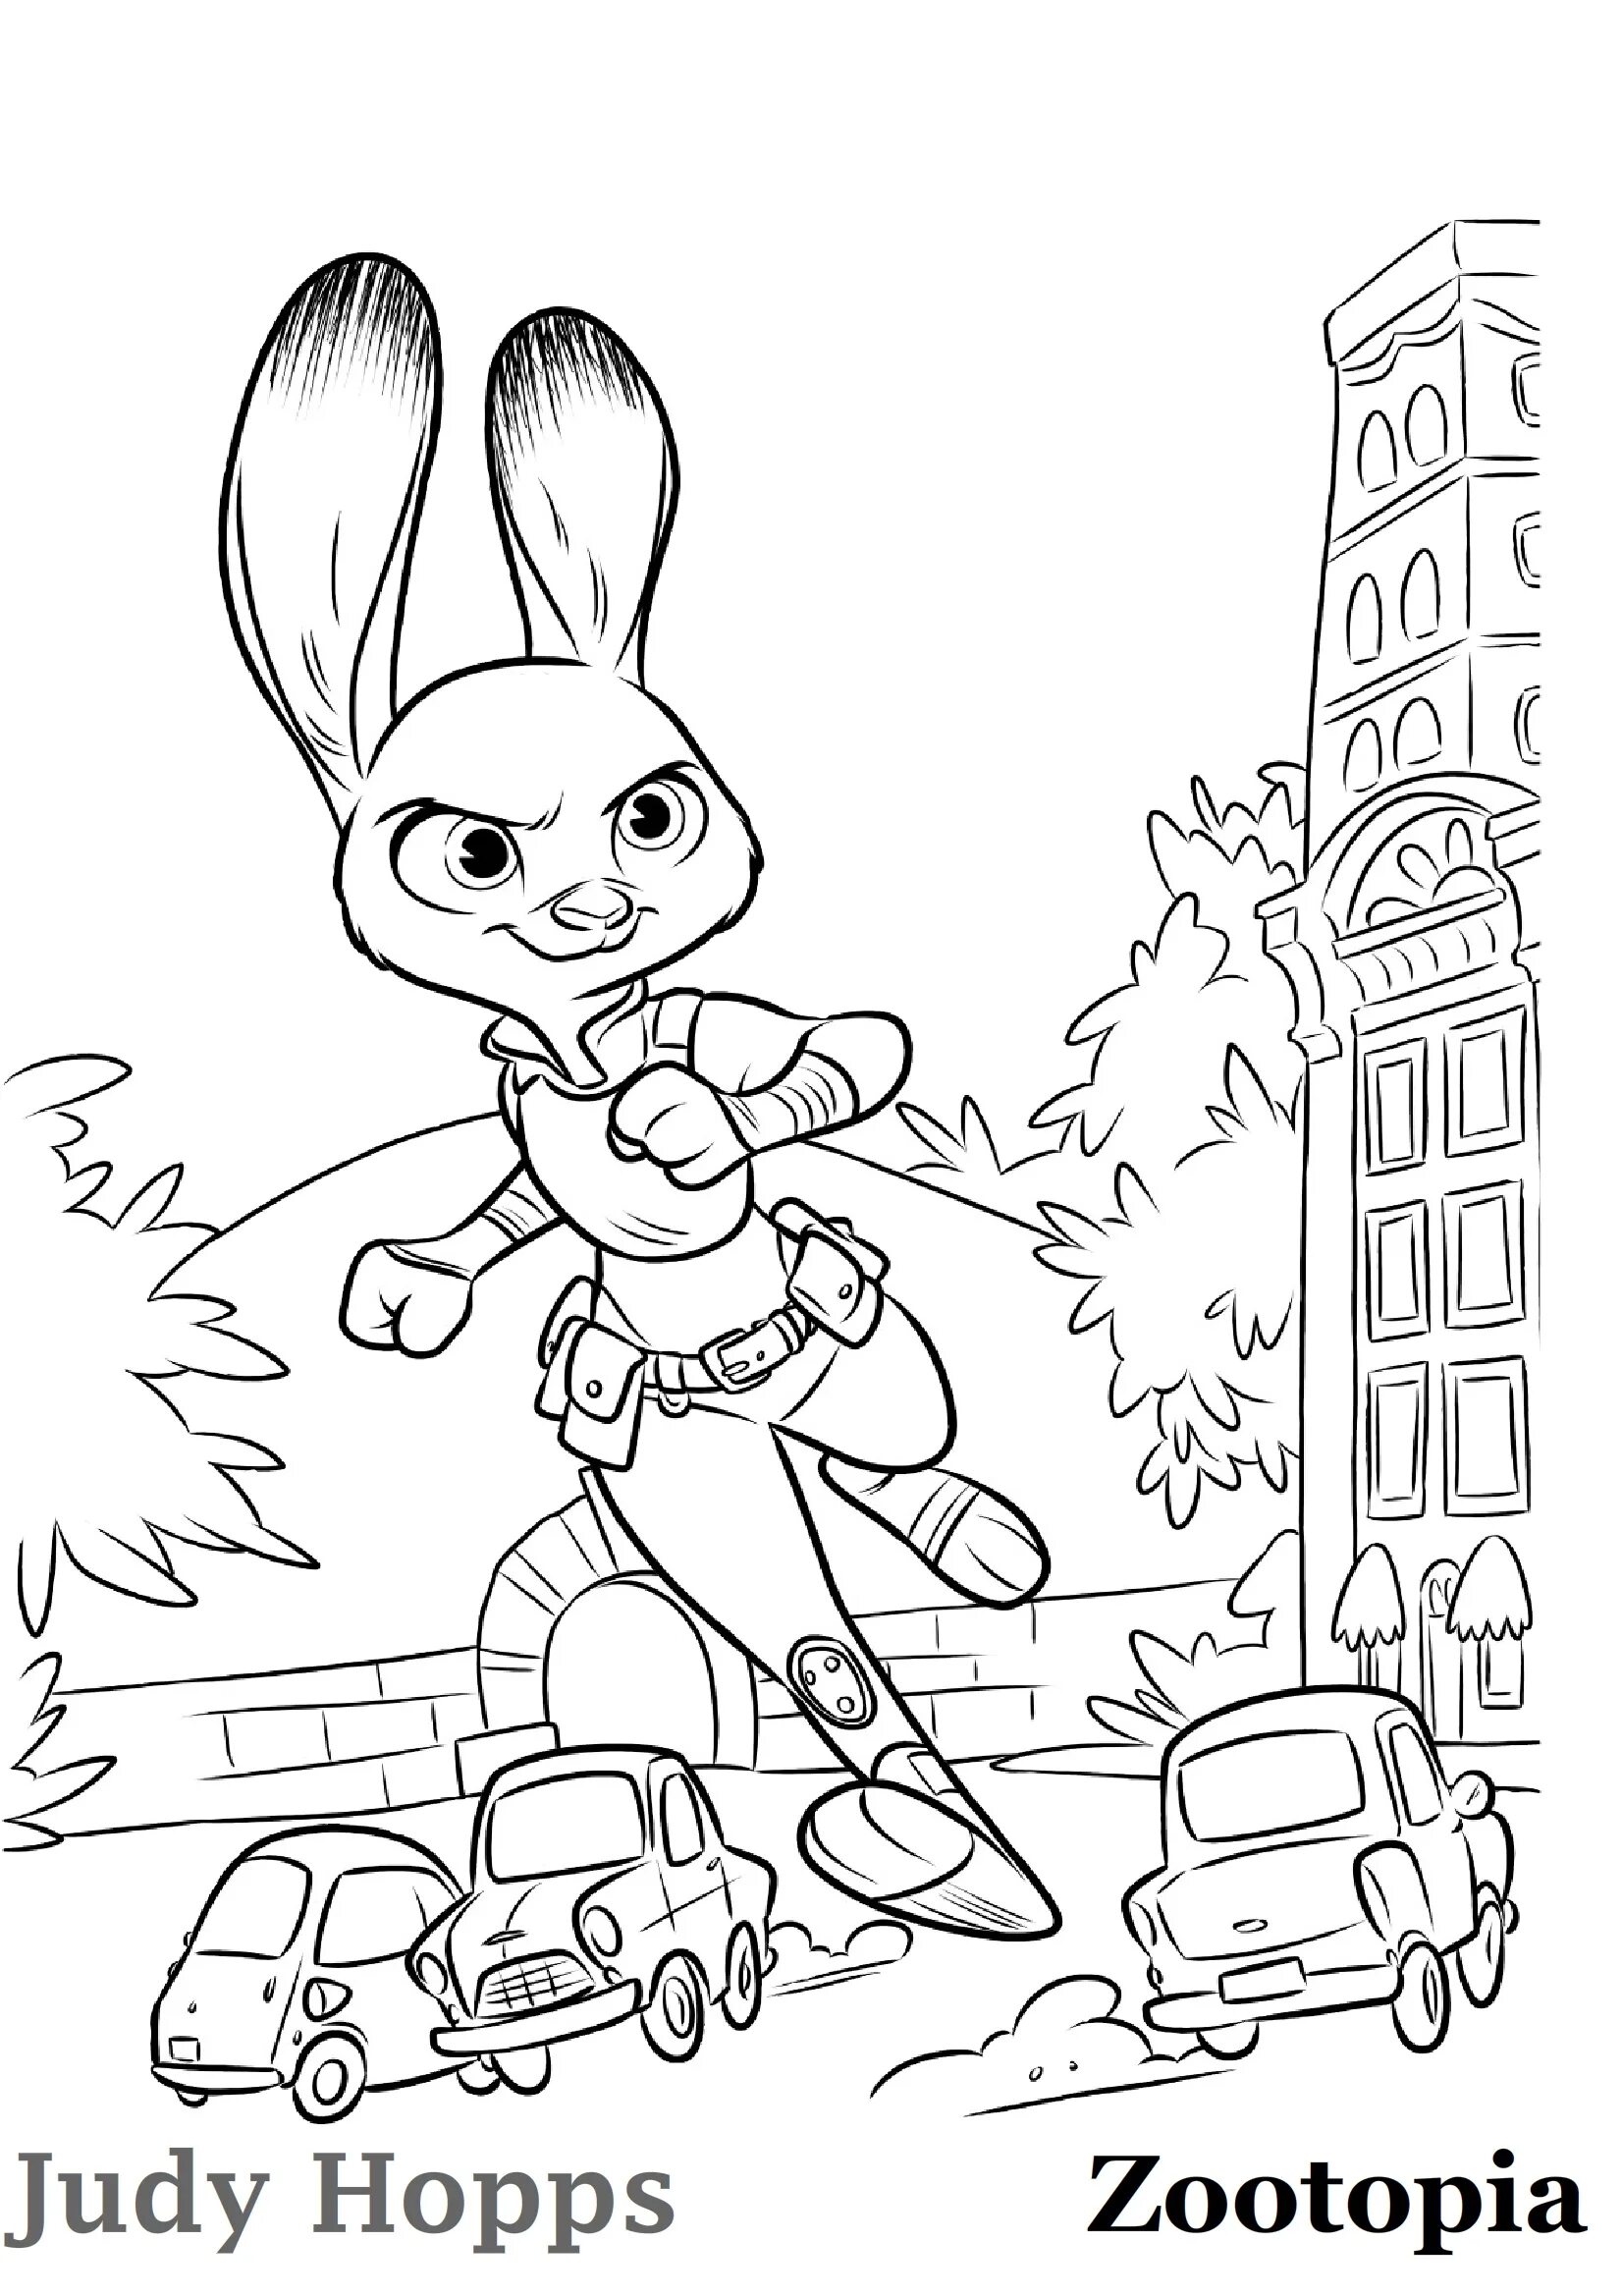 Judy hops #6